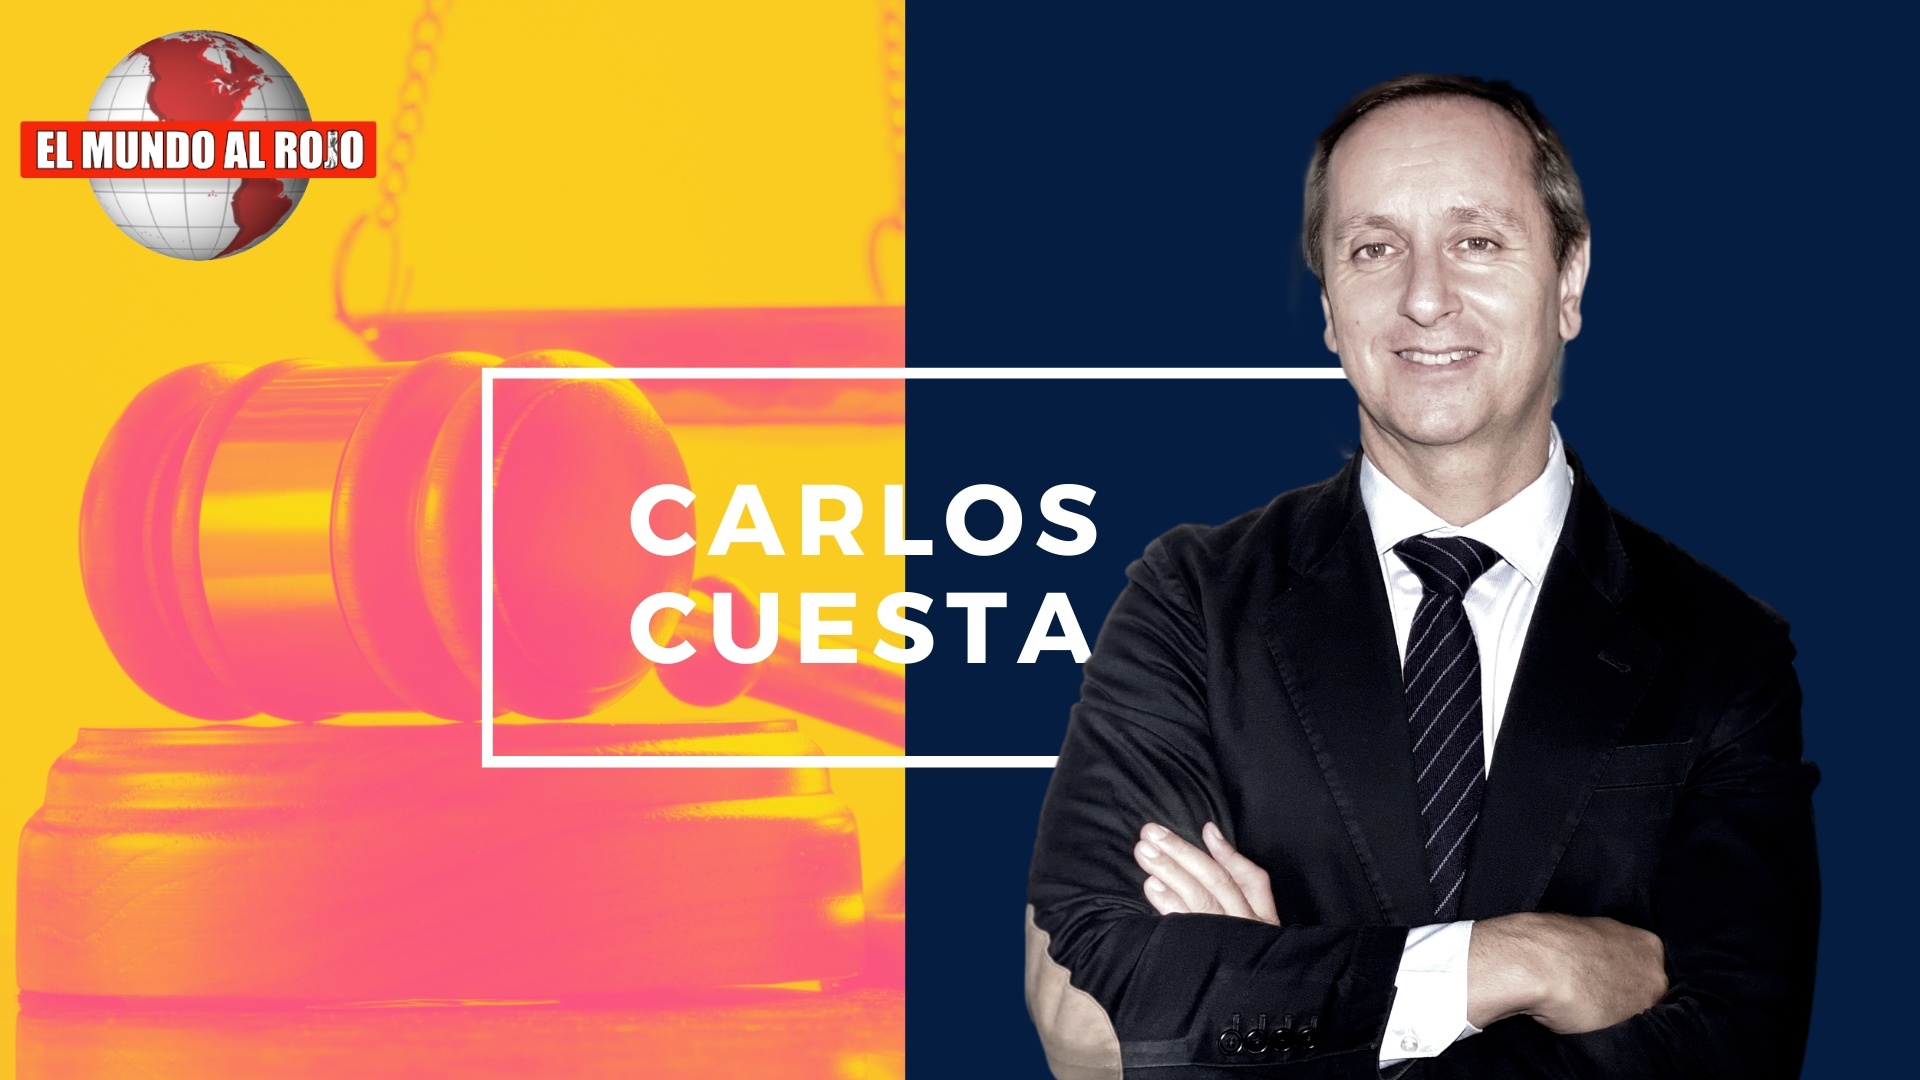 Carlos Cuesta